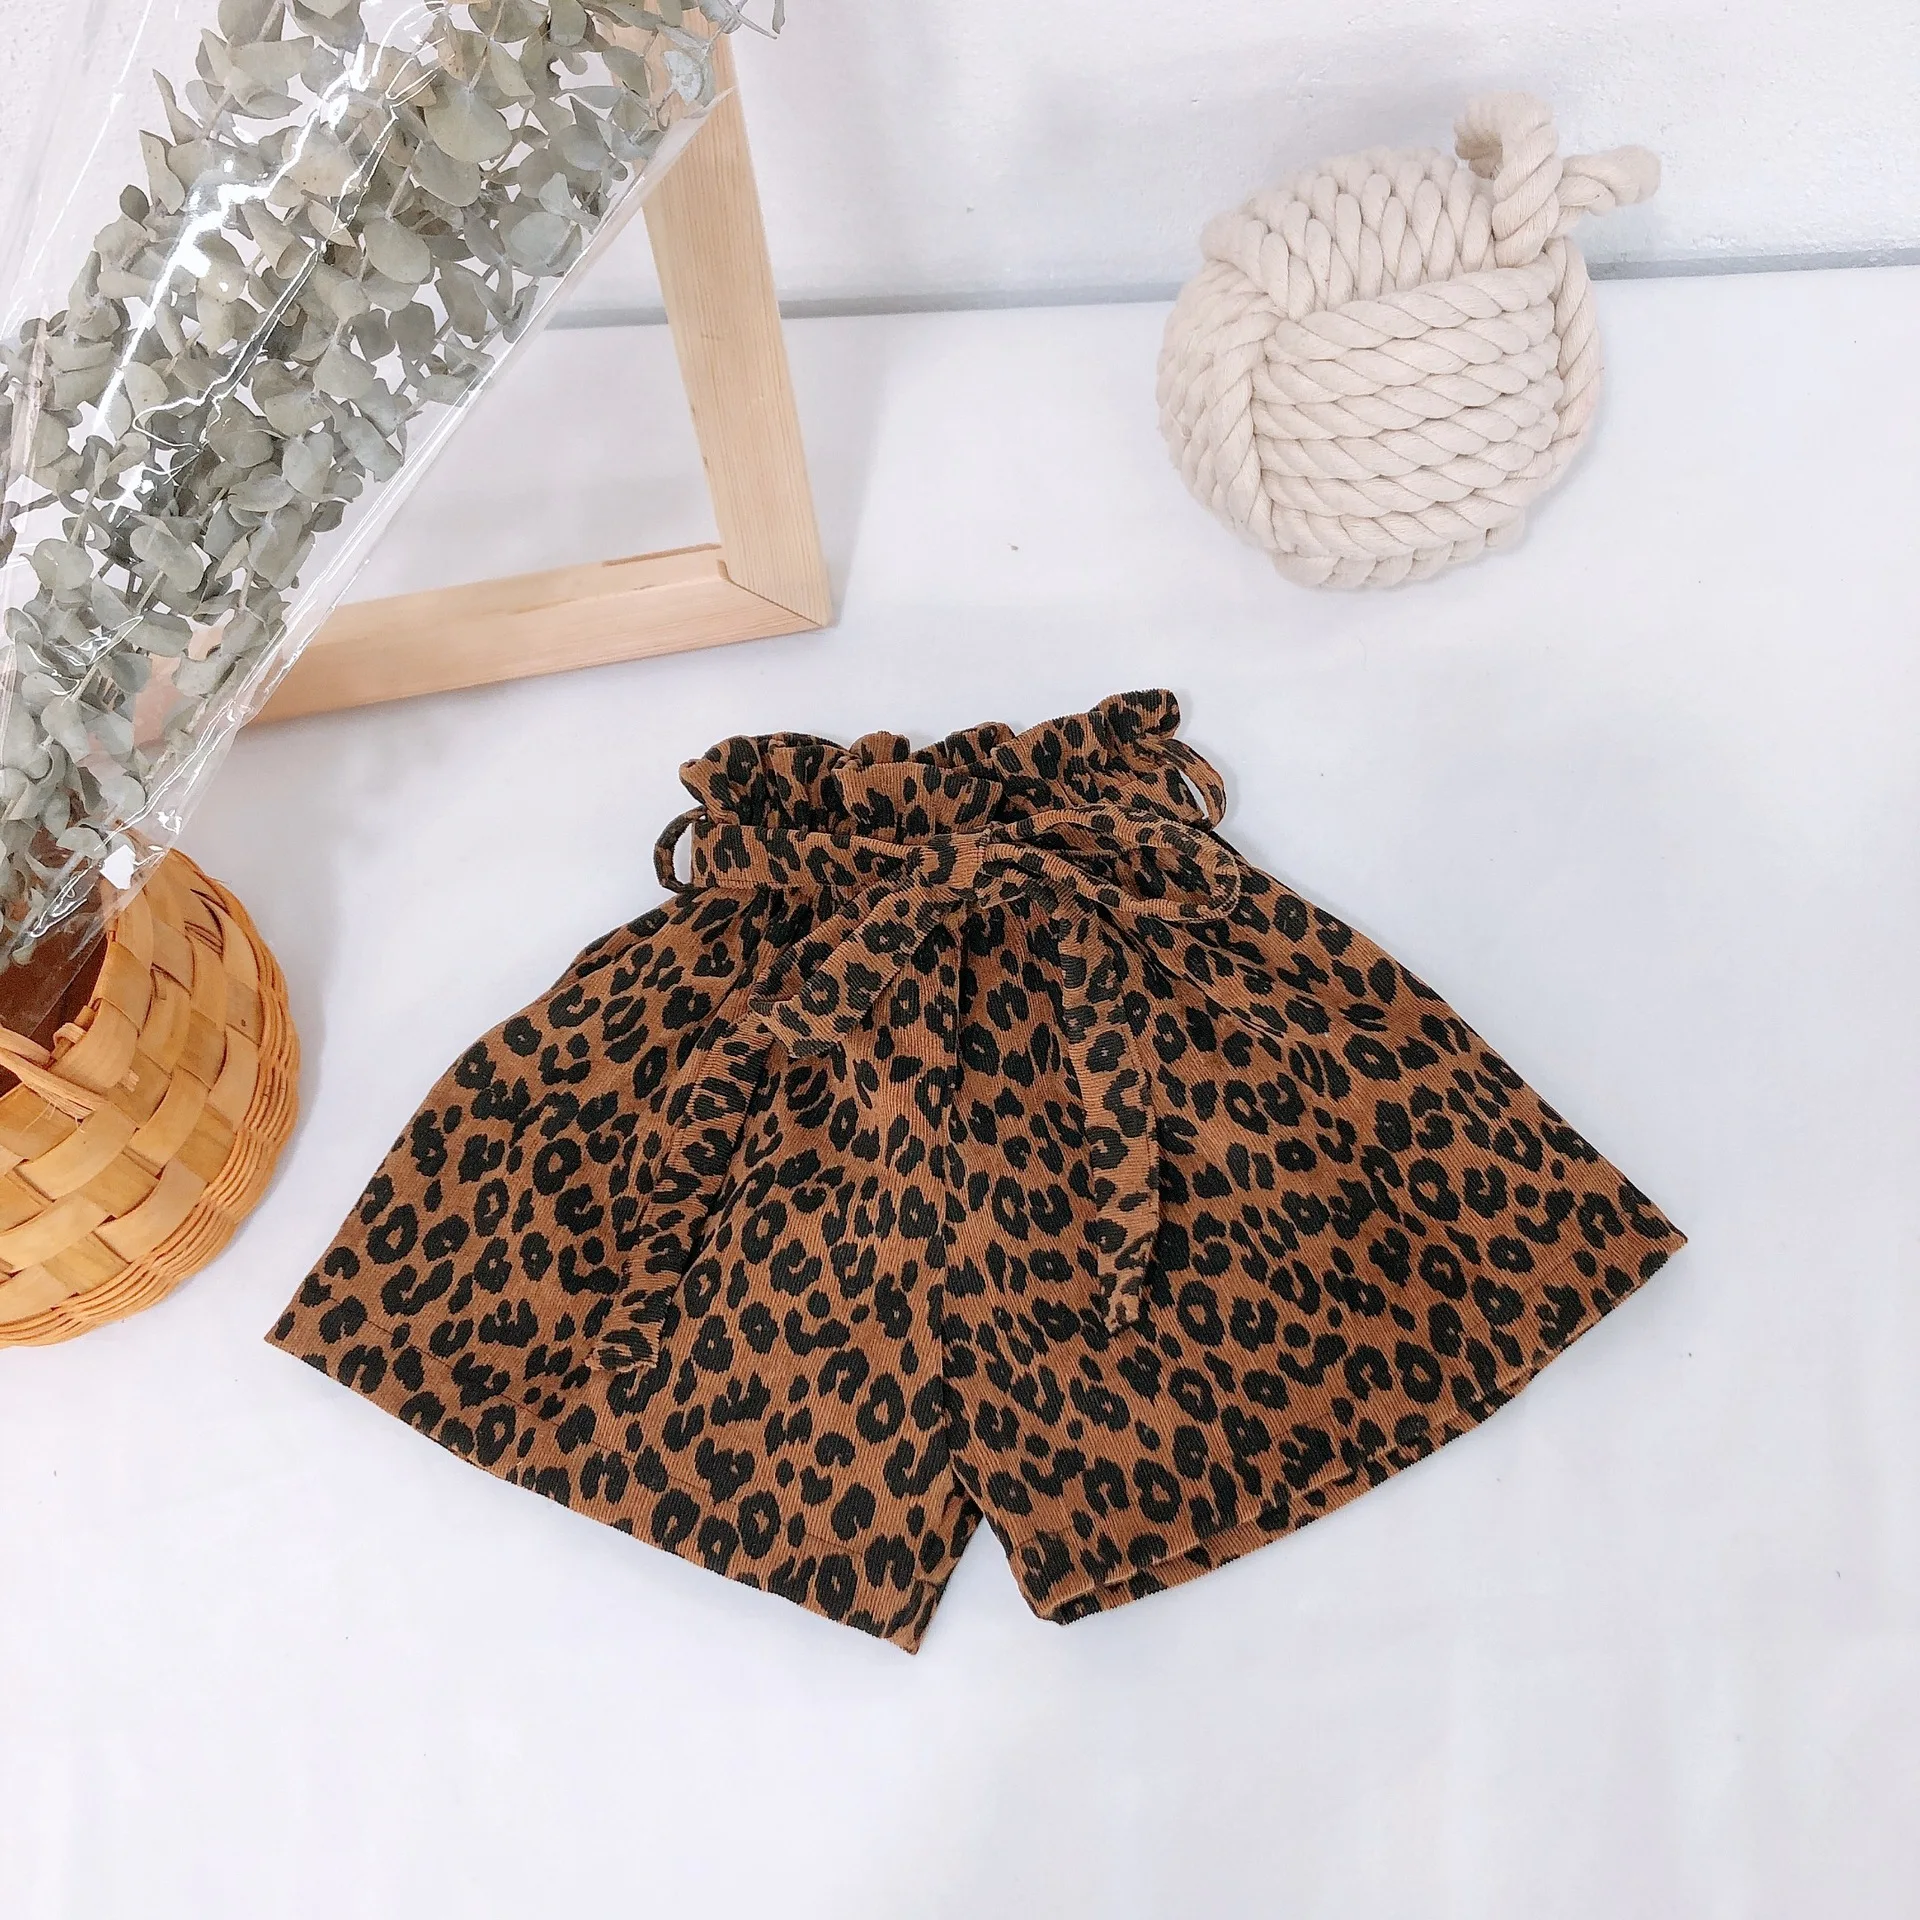 Г. Весенне-летние шорты для маленьких девочек модные вельветовые шорты с леопардовым цветочным принтом детская одежда для детей от 1 до 6 лет